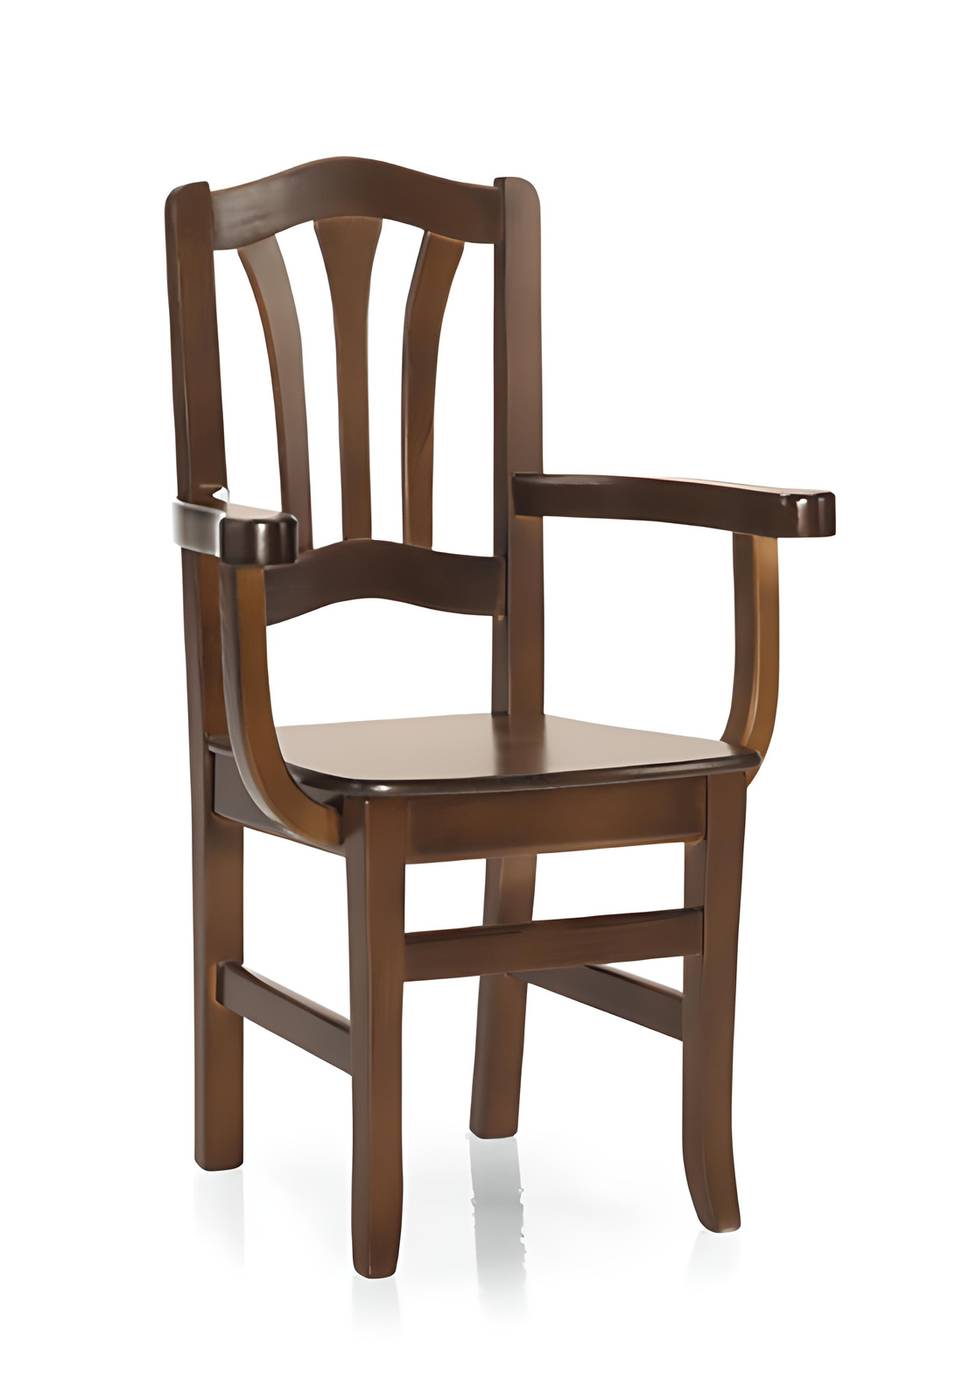 Sillón de comedor con brazos, de madera de pino maciza con asiento de madera, de anea o tapizado. Disponible en varios colores.